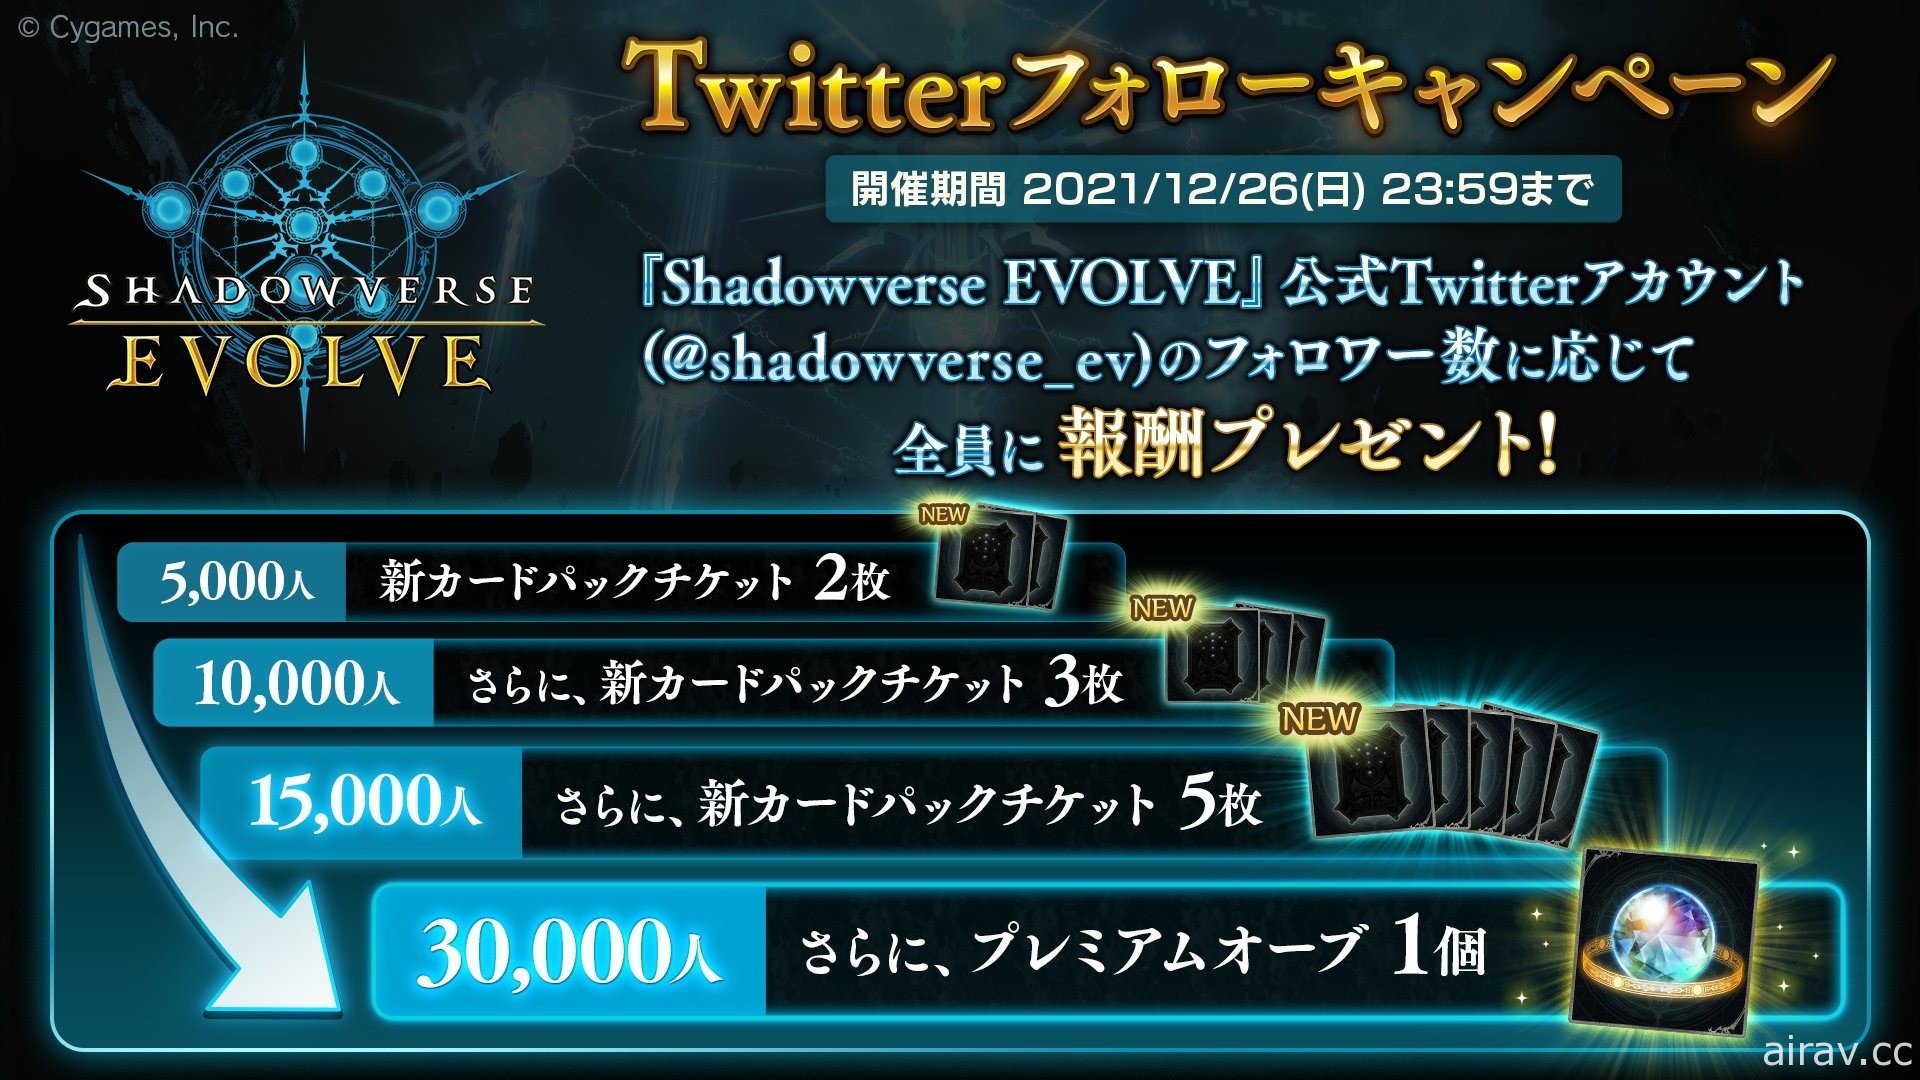 《闇影诗章》实体卡片游戏《Shadowverse EVOLVE》将于 2022 年发售